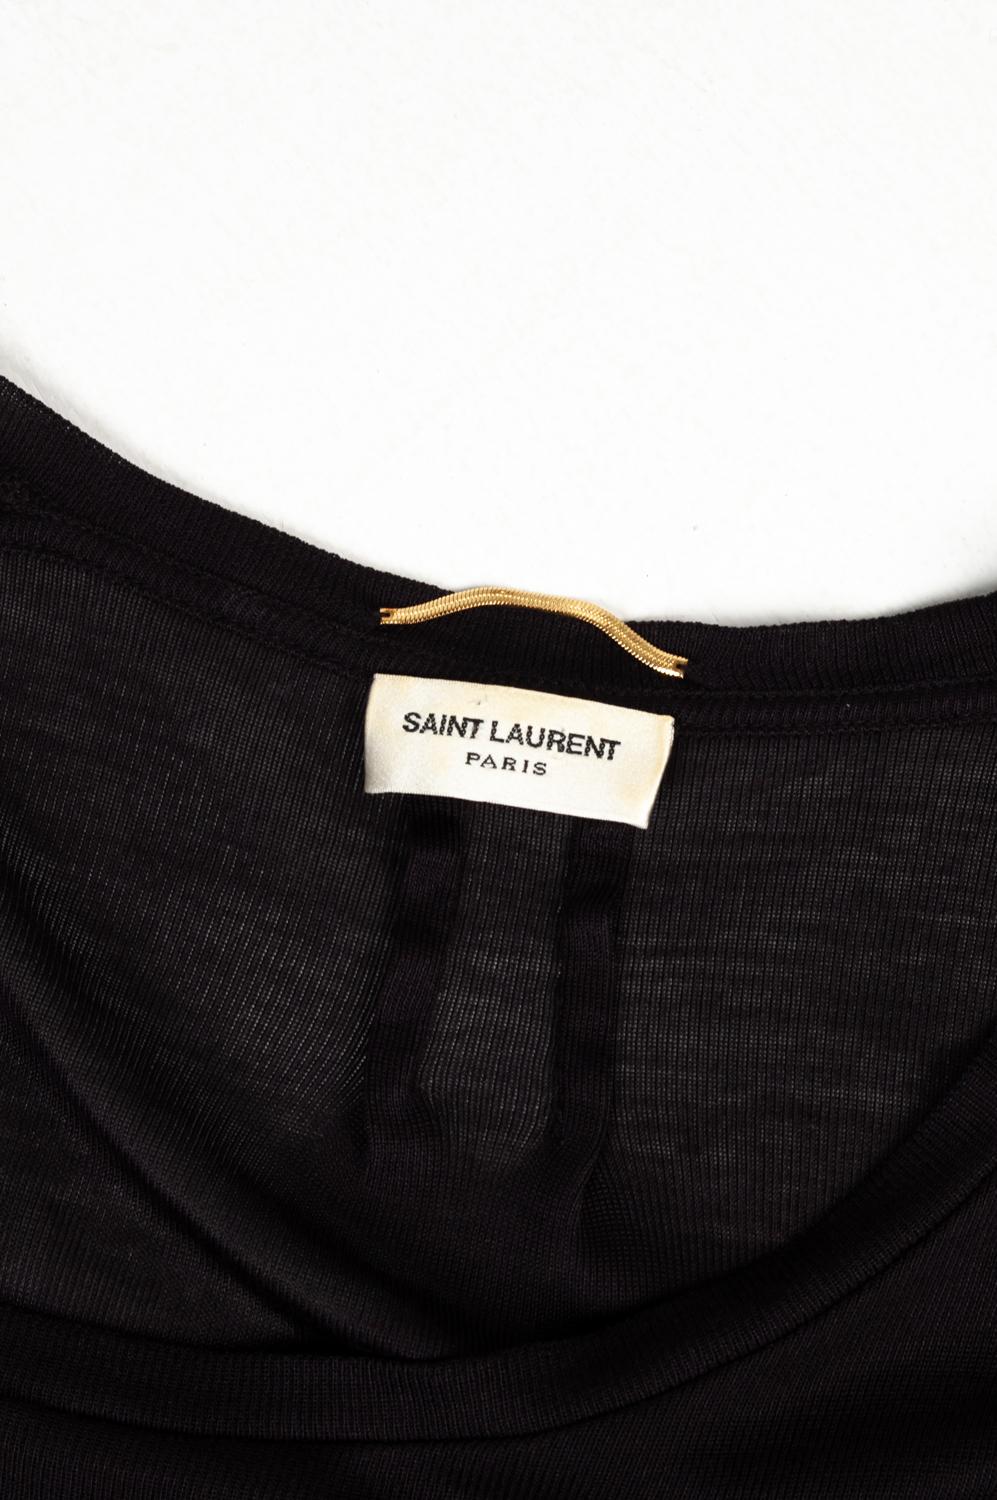 Saint Laurent Men summer t shirt See trough crew neck thin, Size M For Sale 1